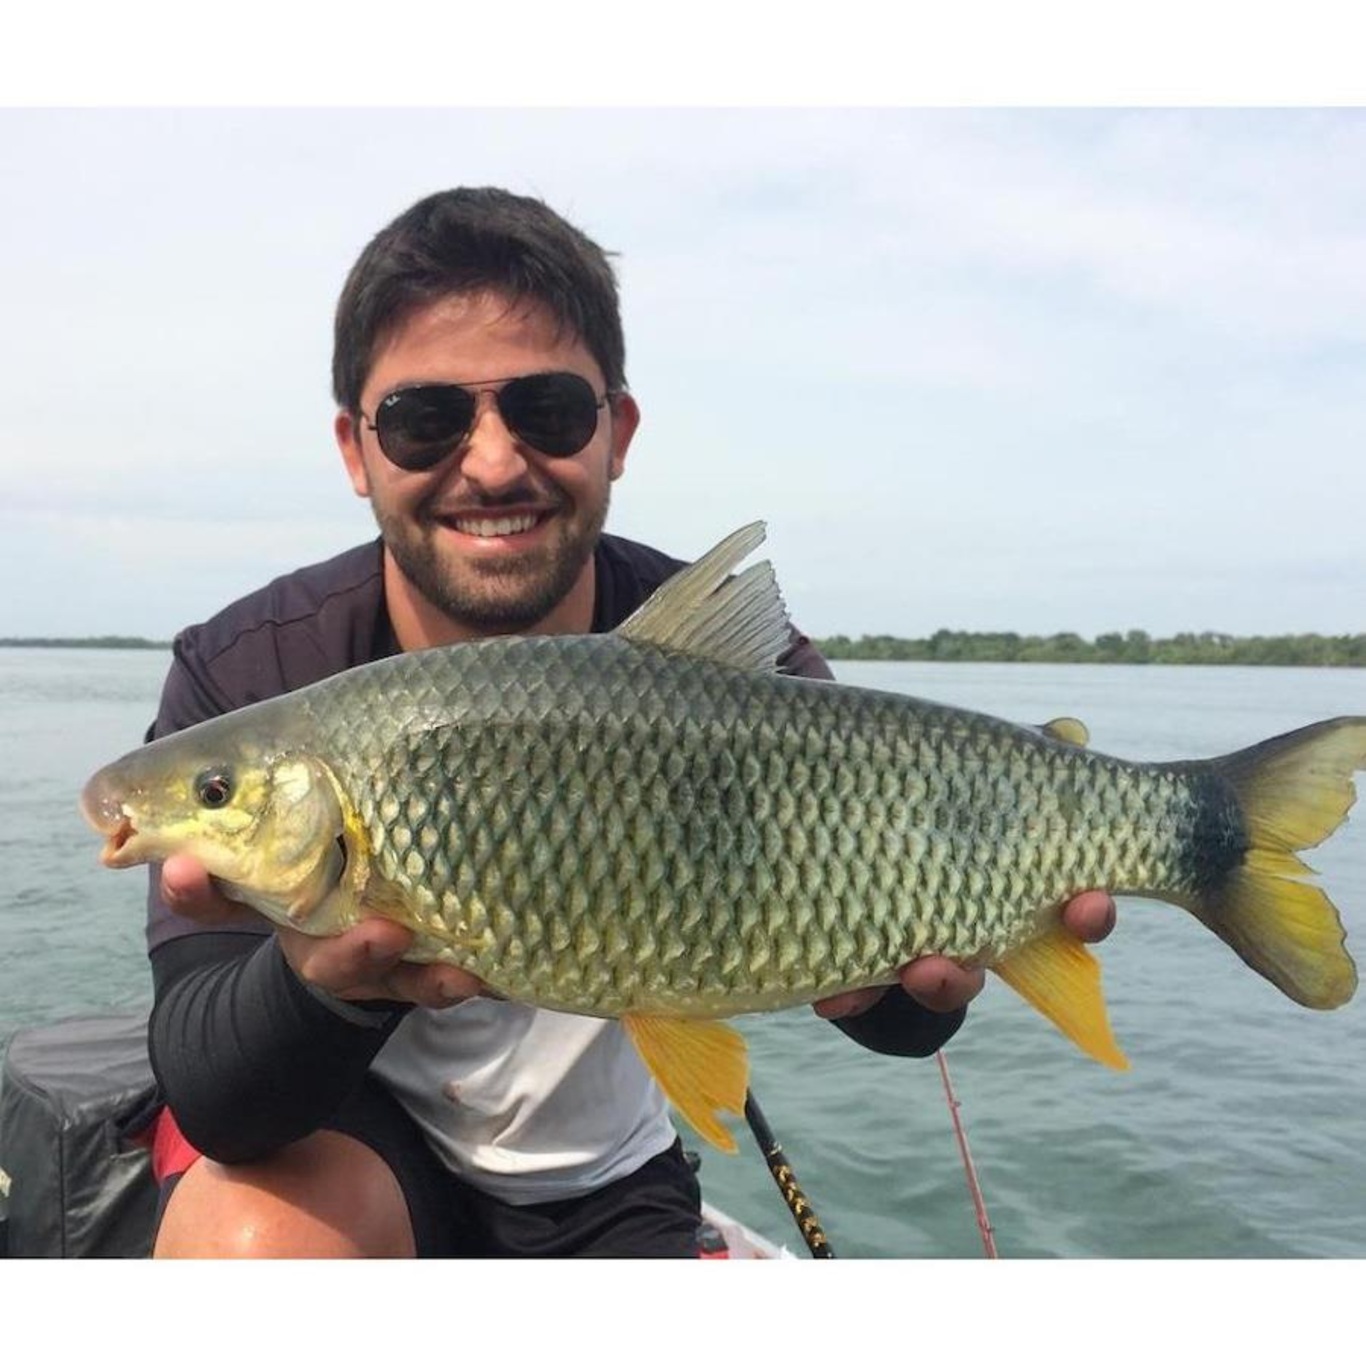 Alicate Balança Pega Peixe Pesca Brasil 21kg com corda e cabo